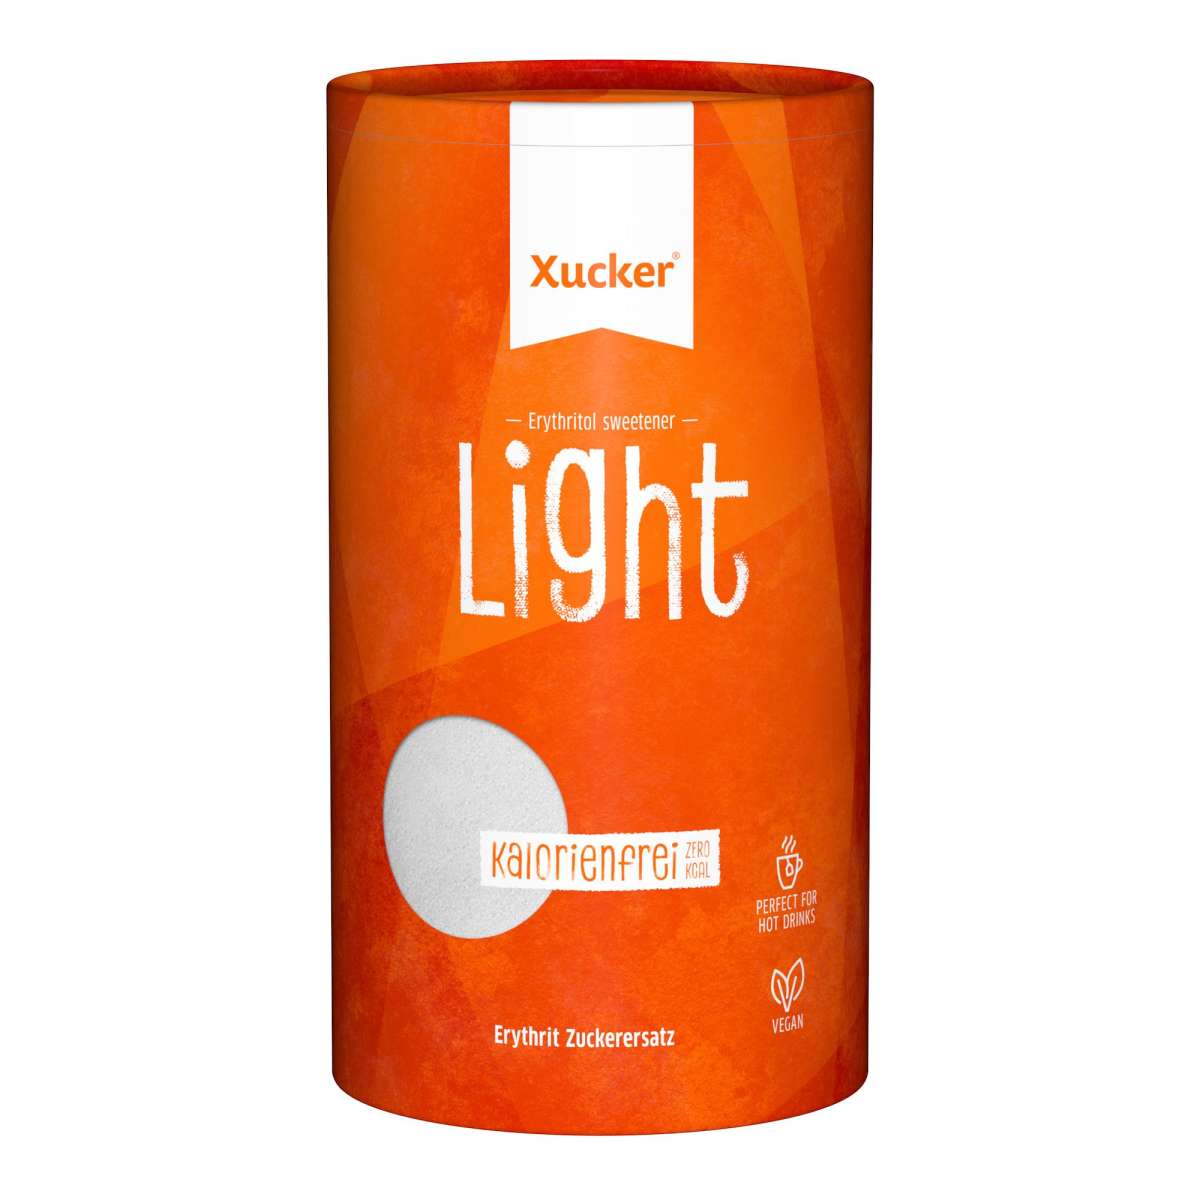 Xucker Light Erythrit - 1 kg Dose